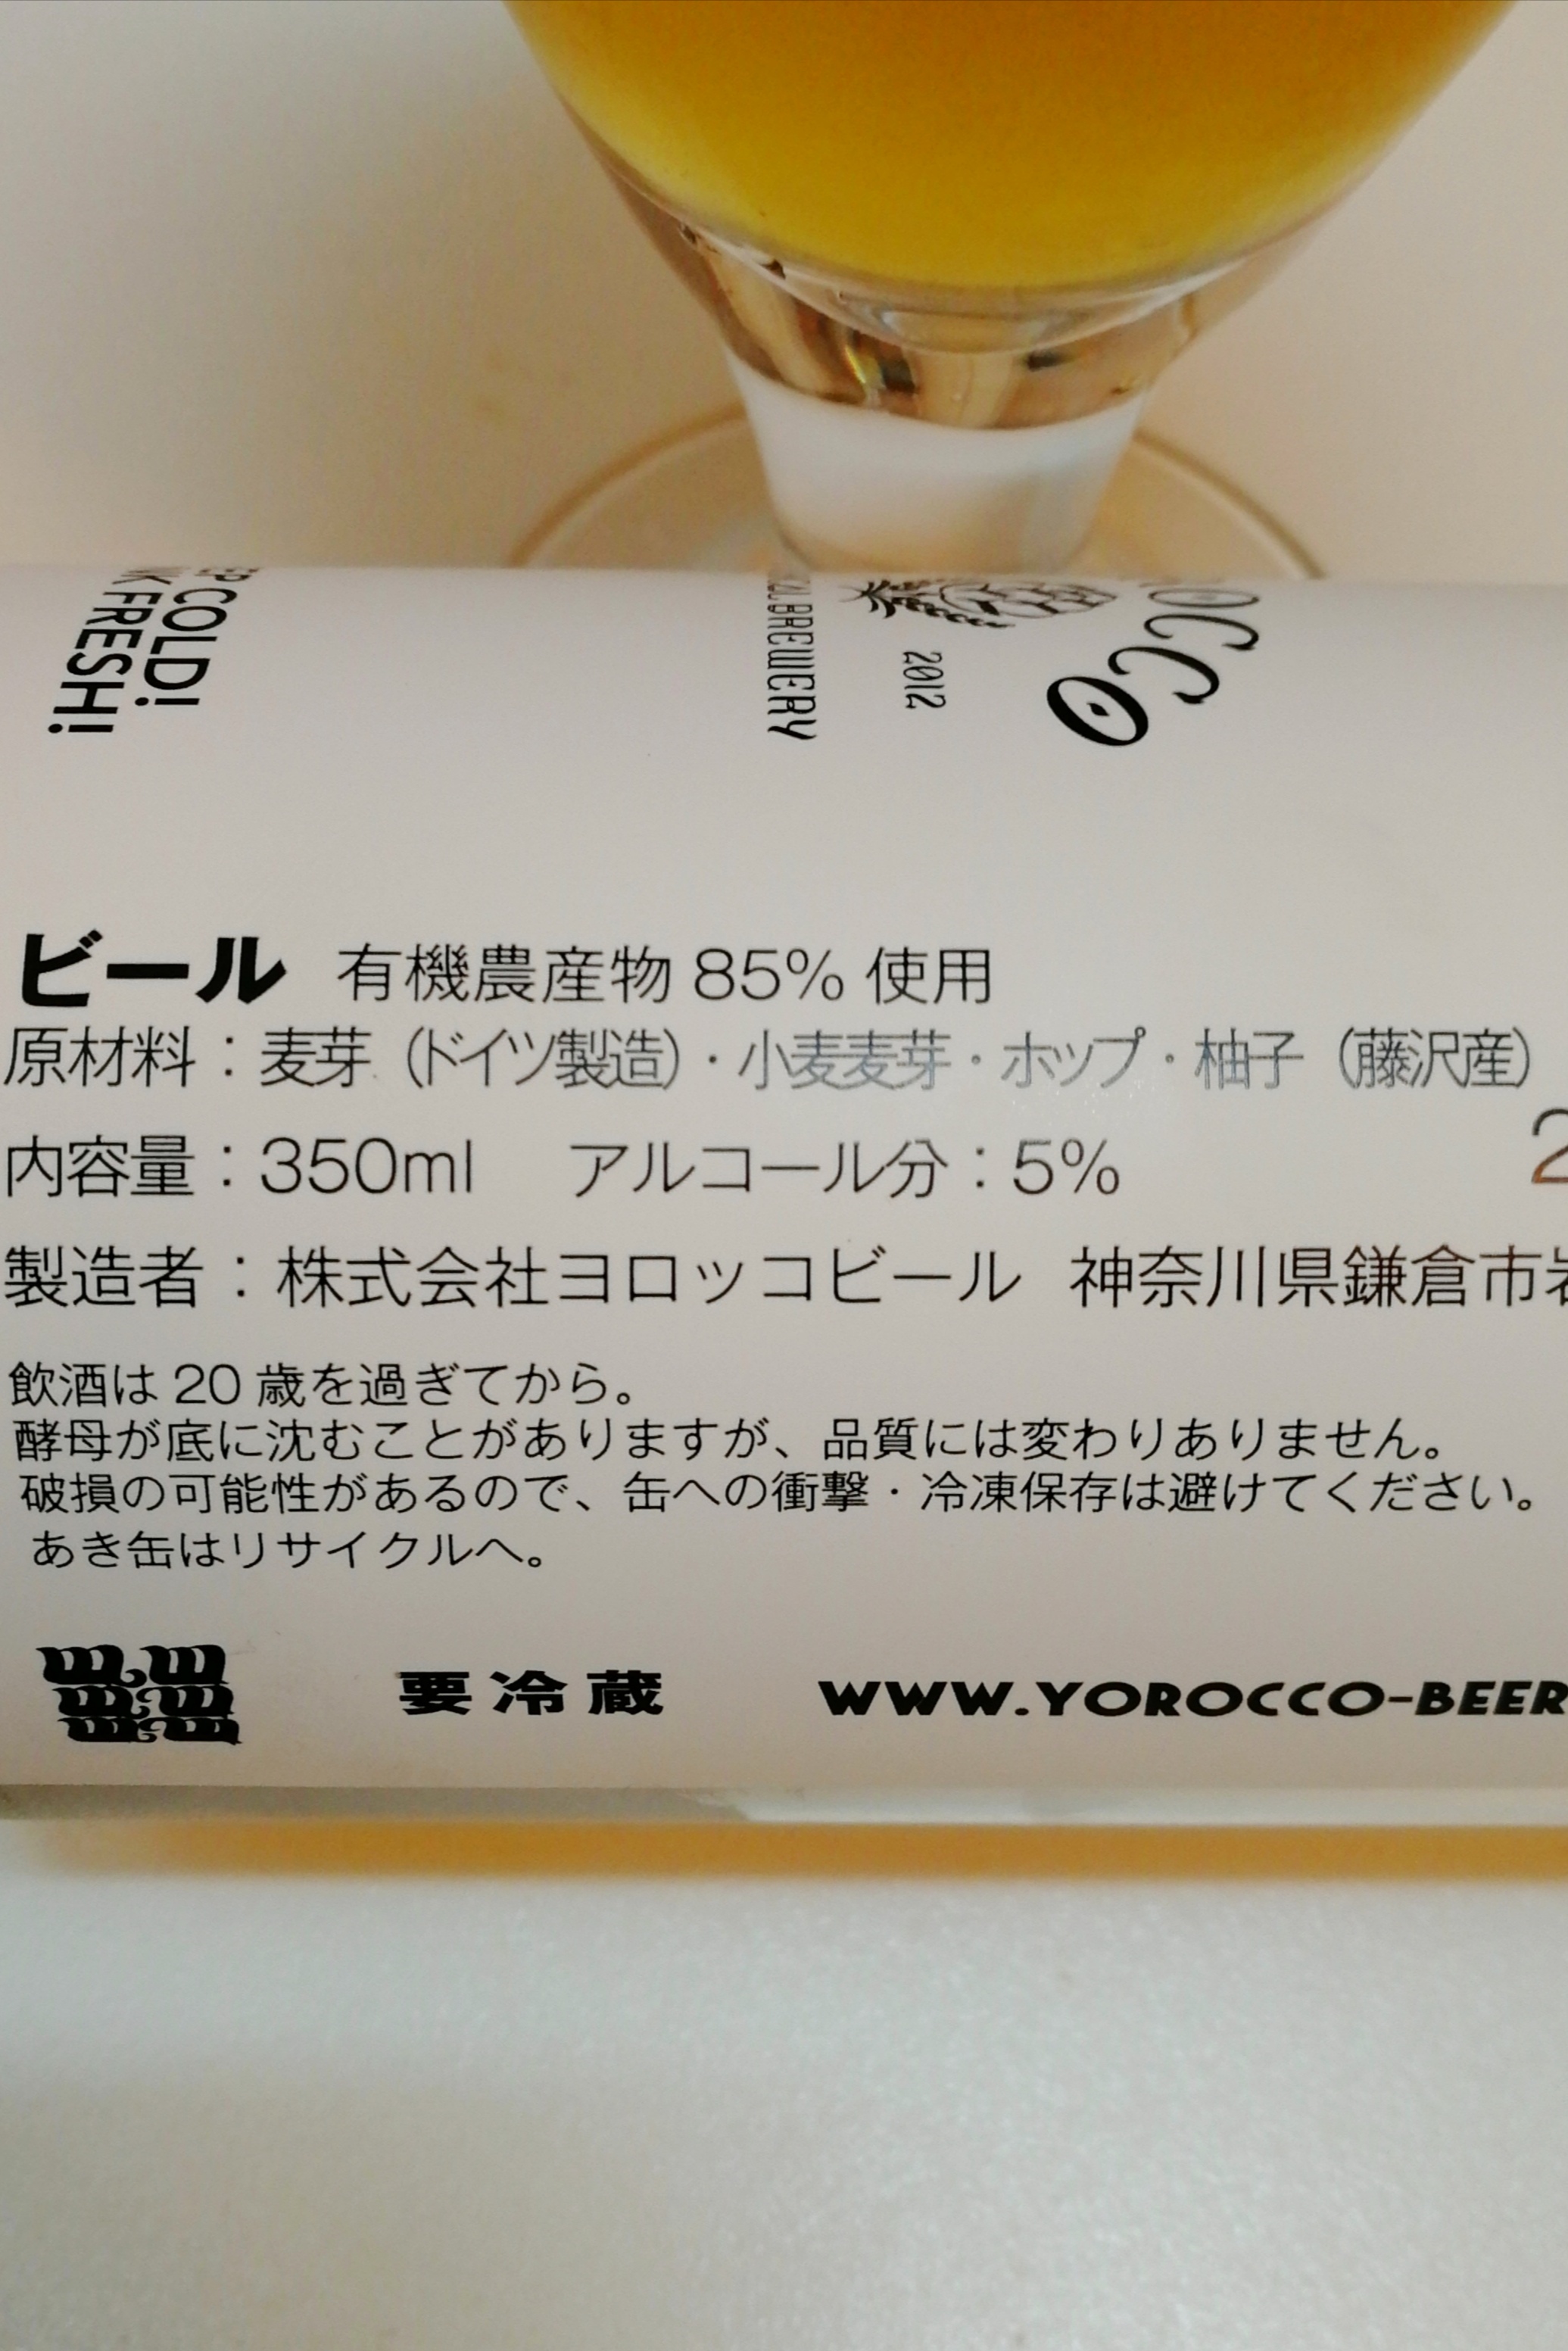 神奈川,株式会社ヨロッコビール,YUZUSAISON